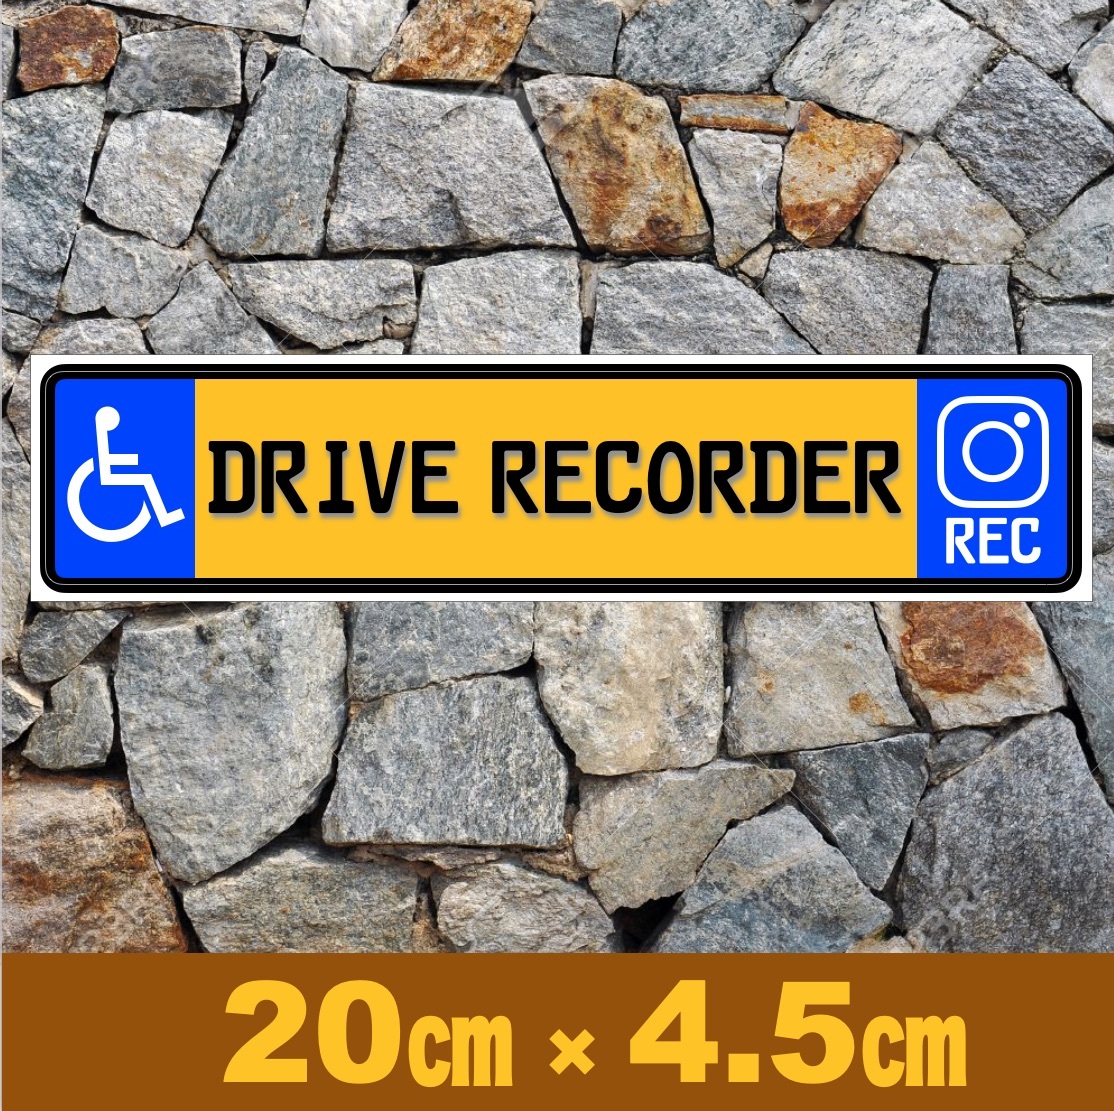  желтый * инвалидная коляска Mark [ регистратор пути (drive recorder) REC] магнит стикер * евро plate 